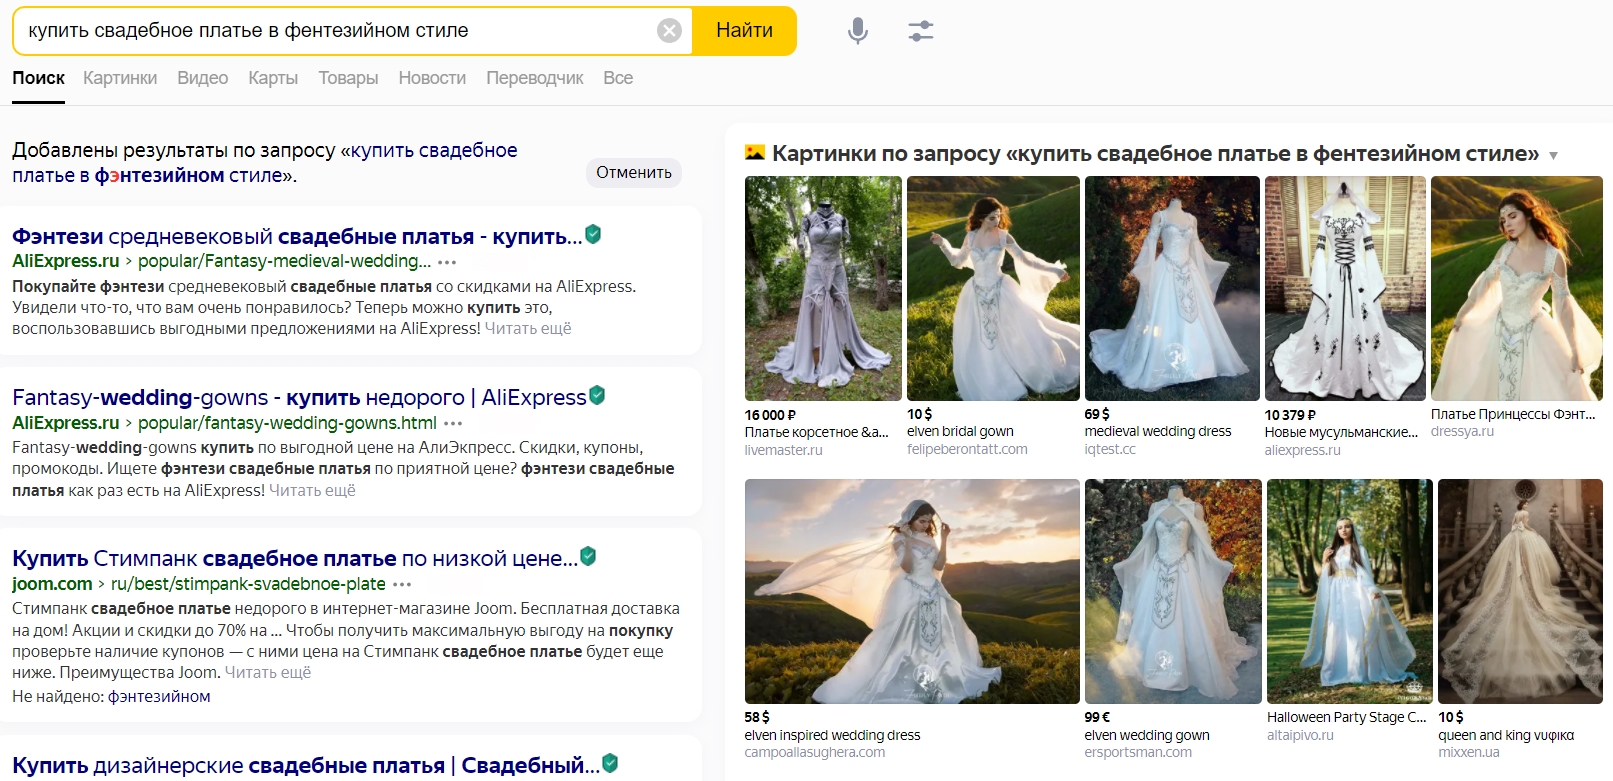 Расширенный сниппет с картинками в Яндексе